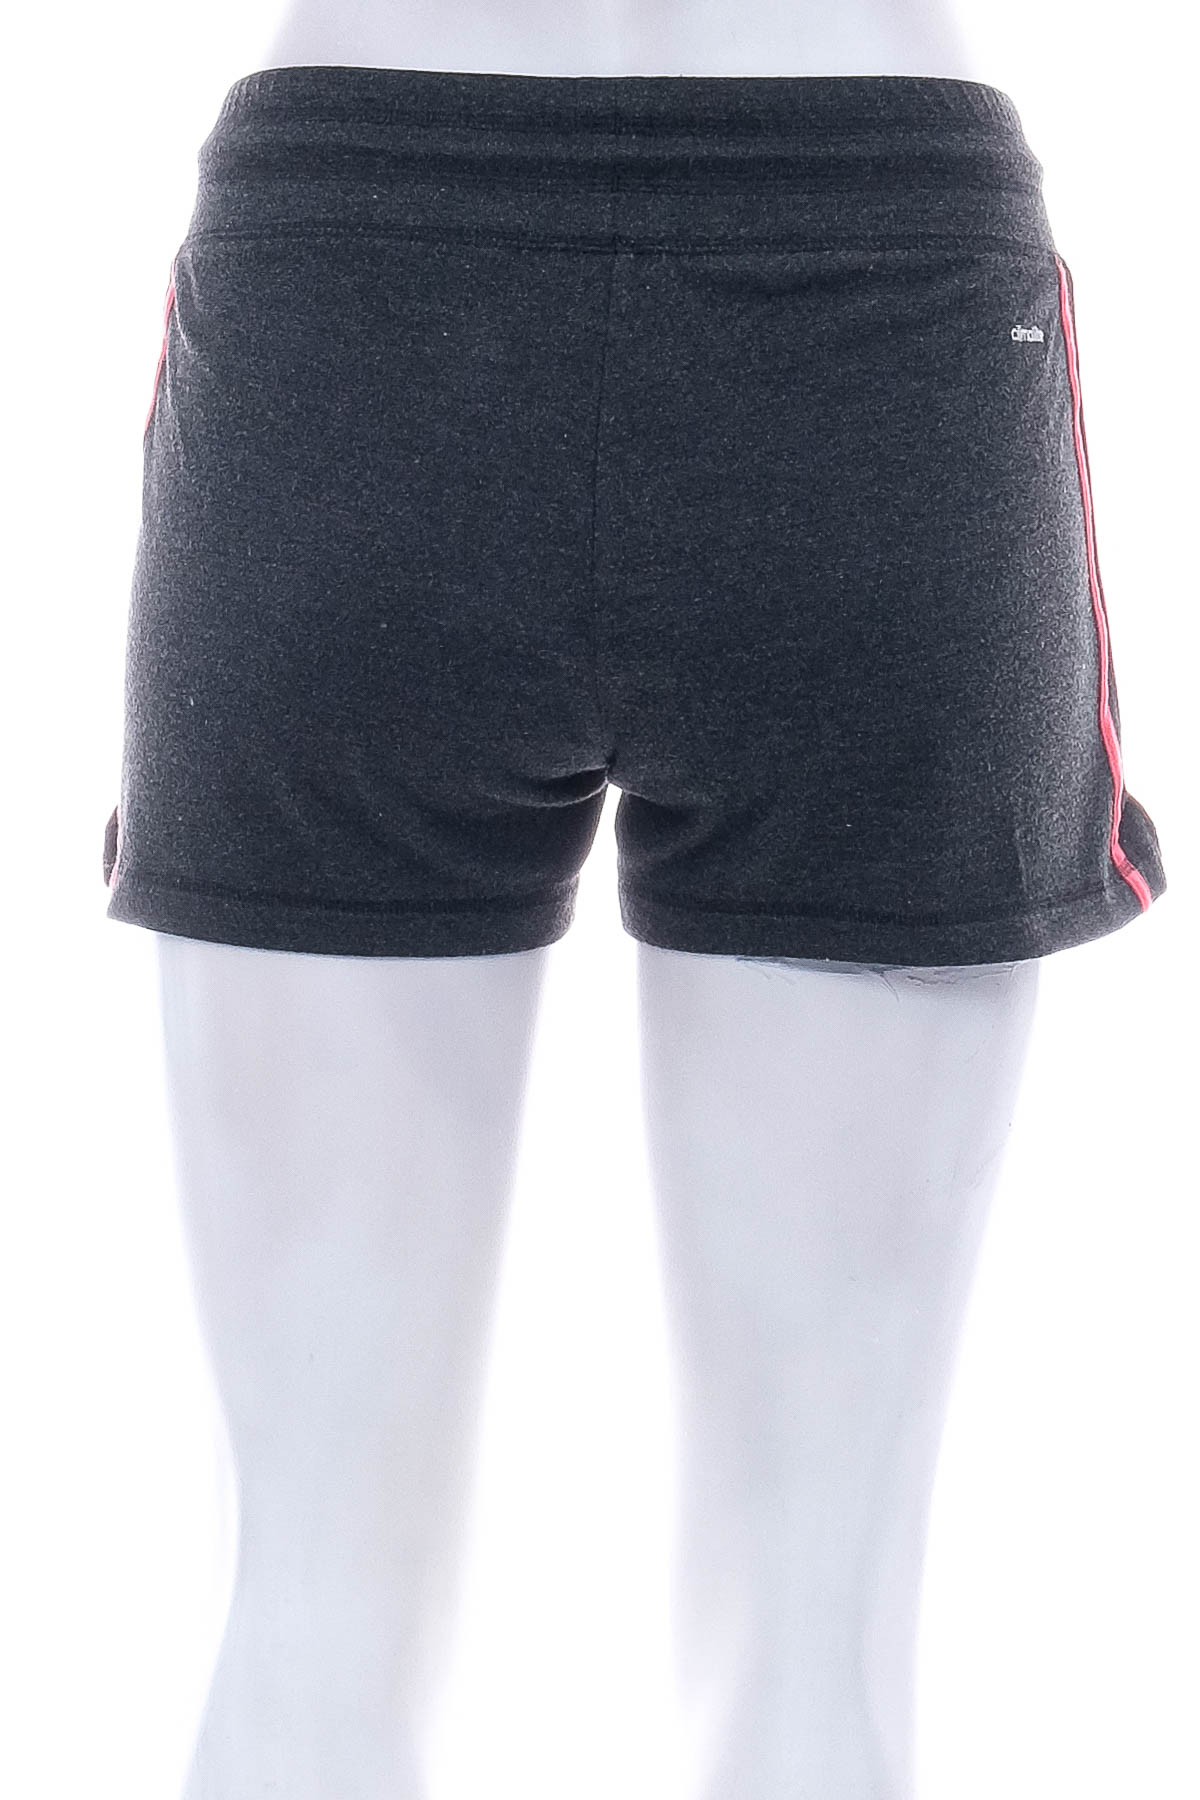 Female shorts - Adidas - 1